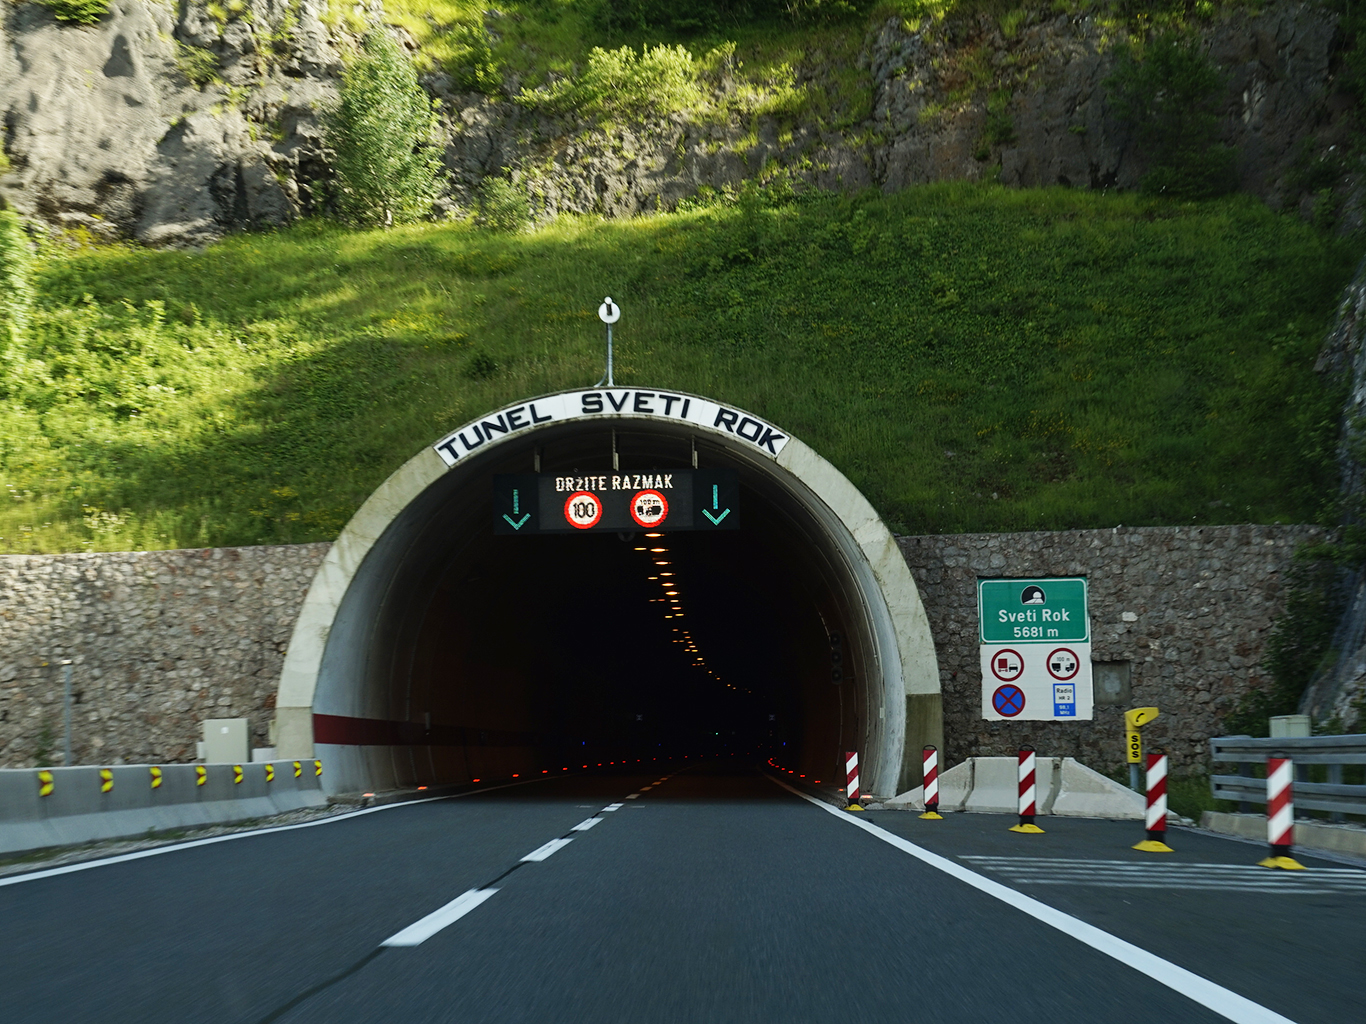 Tunel sv. Rok vede skrz pohoří Velebit 